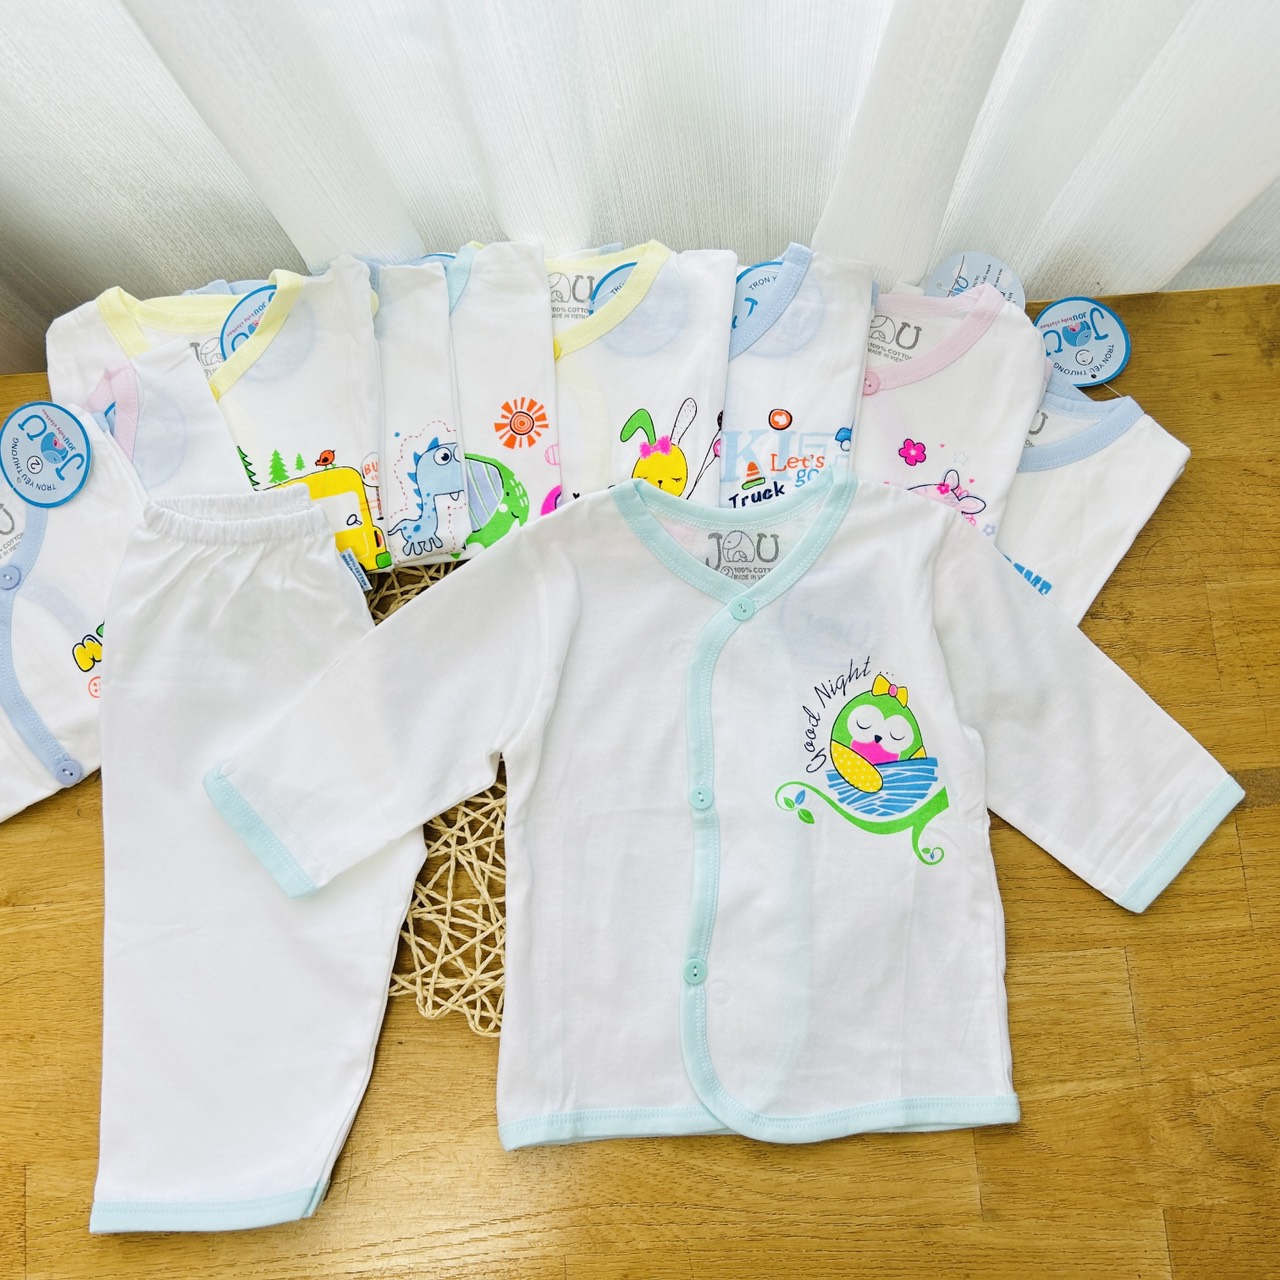 Combo 3 bộ áo quần sơ sinh Tay Dài Cài Nút Xéo Trắng JOU - Size 1,2,3,4 cho bé sơ sinh -11kg